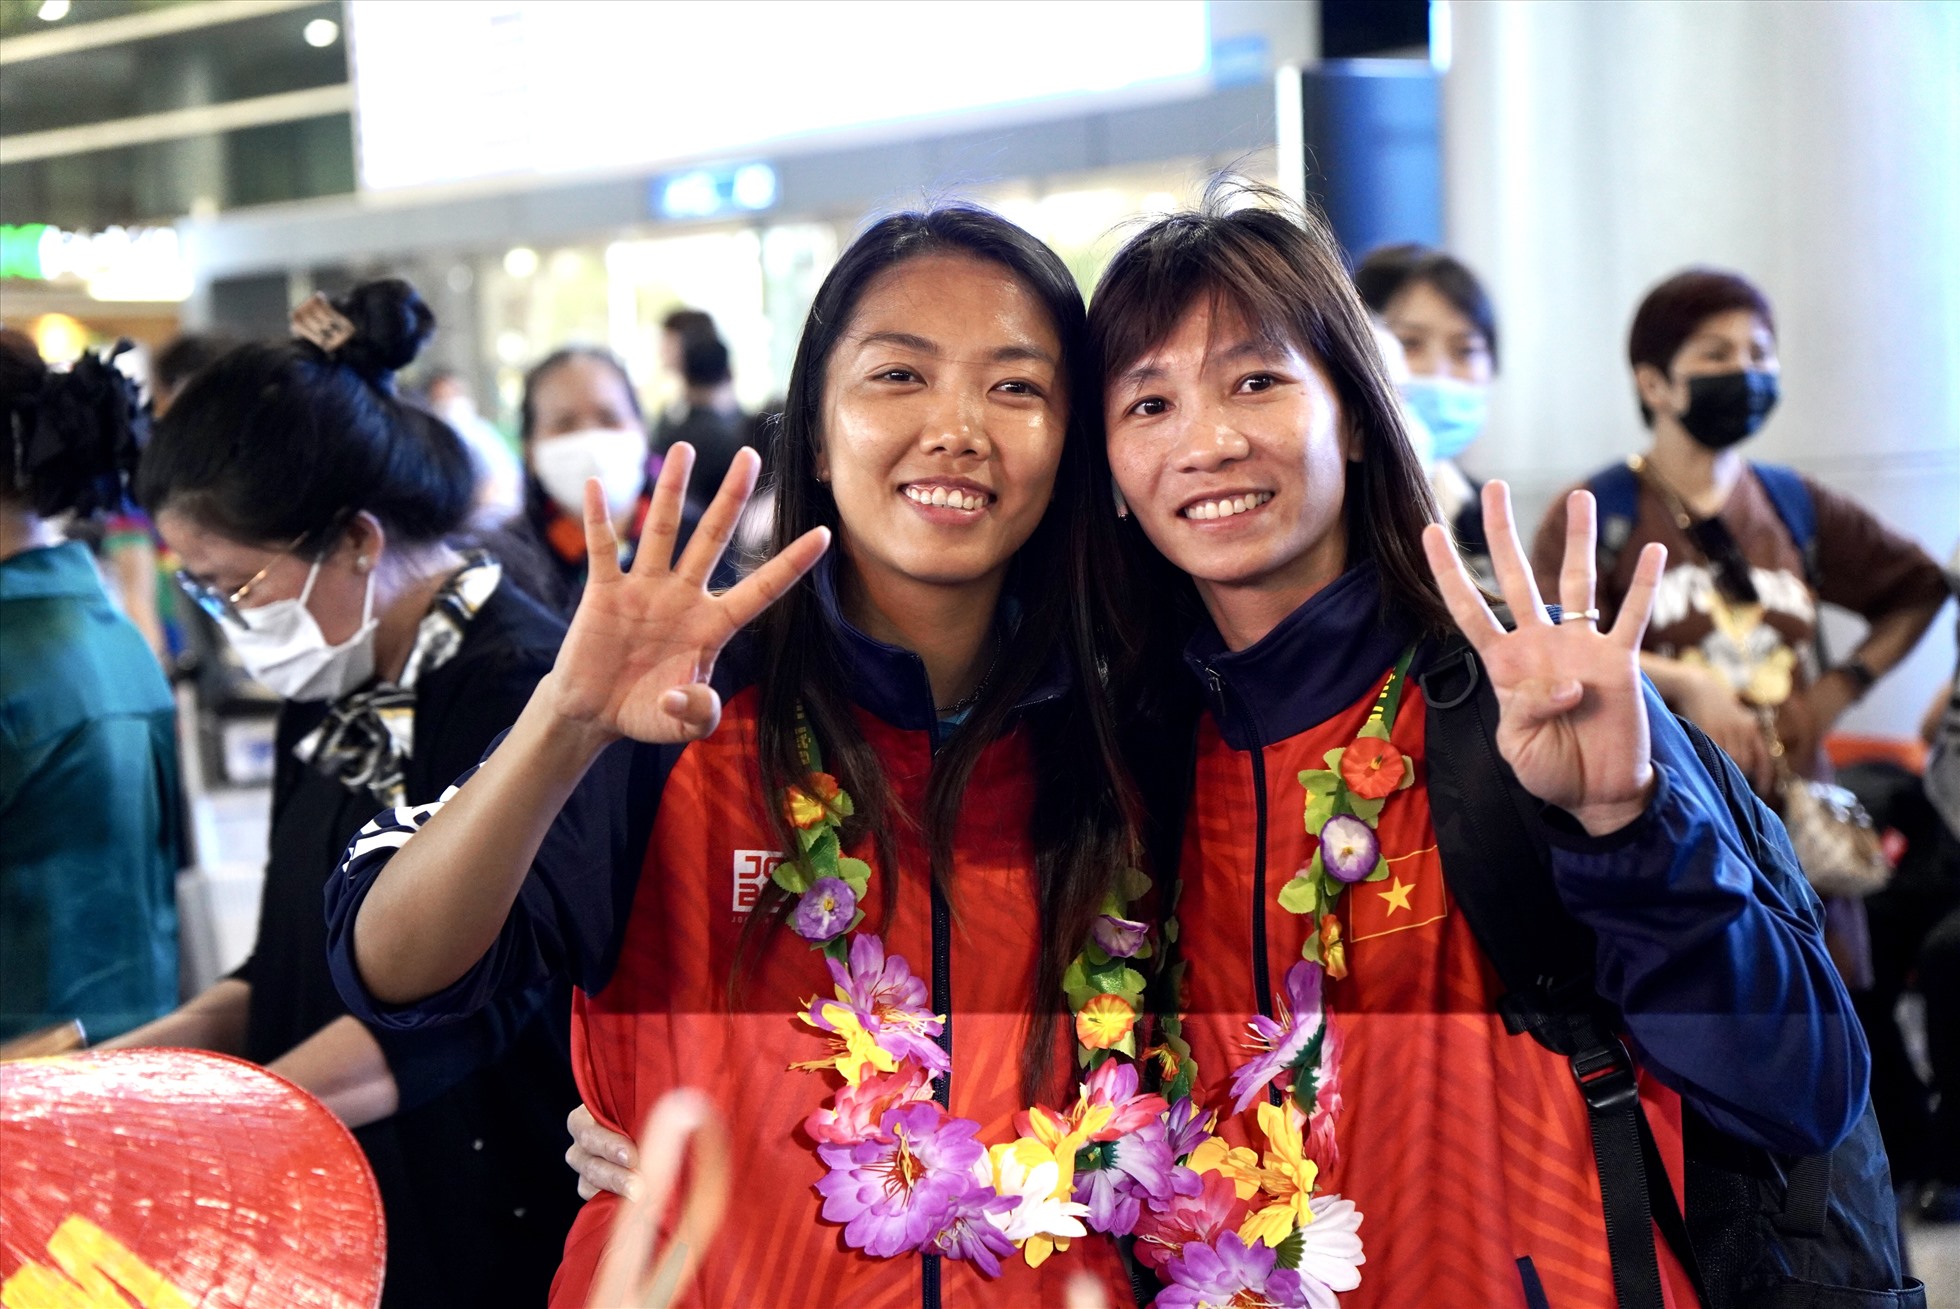 Chia sẻ về chức vô địch của đội tuyển nữ Việt Nam trong kì SEA Games 32 vừa qua, “cô gái vàng” Huỳnh Như cho biết đây là một chiến thắng có ý nghĩa rất lớn đối với toàn đội, nhất là khi trước thềm chuẩn bị cho kì World Cup sắp tới: “Tấm huy chương vàng này không chỉ giúp cho toàn đội cảm thấy tự tin hơn mà đồng thời còn củng cố thêm niềm tin yêu của người hâm mộ dành cho đội tuyển nữ Việt Nam“.